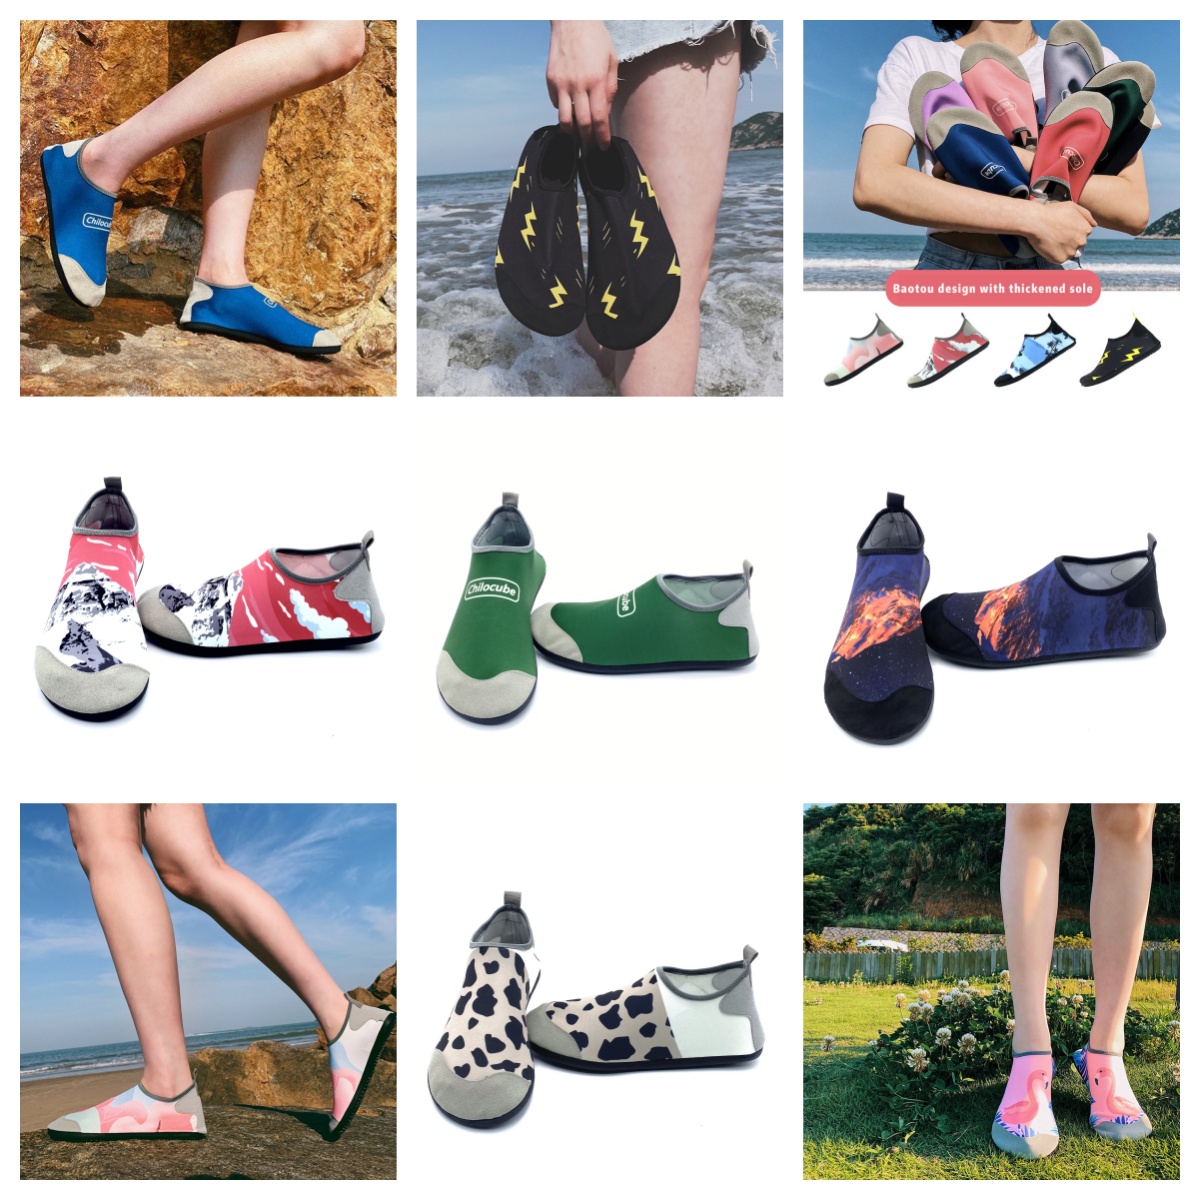 Atletik Ayakkabılar Gai Sandal Erkek ve Kadın Taşınan Ayakkabı Çıplak Ayak Yüzme Spor Ayakkabıları Yeşil Açık Plajlar Sandal Çift Derek Ayakkabı Boyutu EUR 35-46